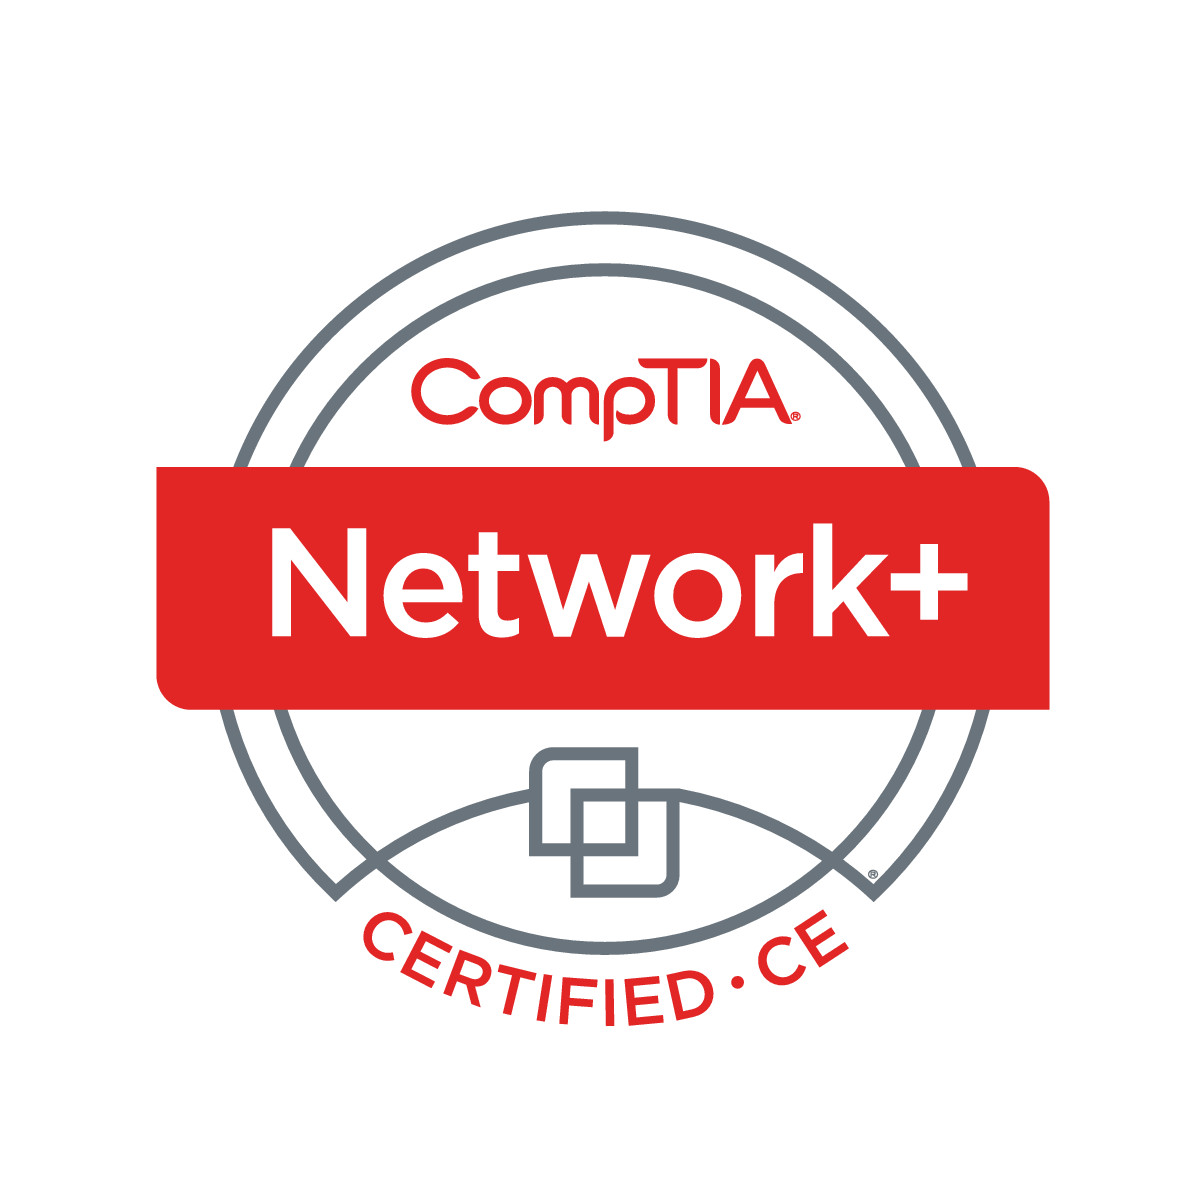 NetworkPlus Logo Certified CE.jpg